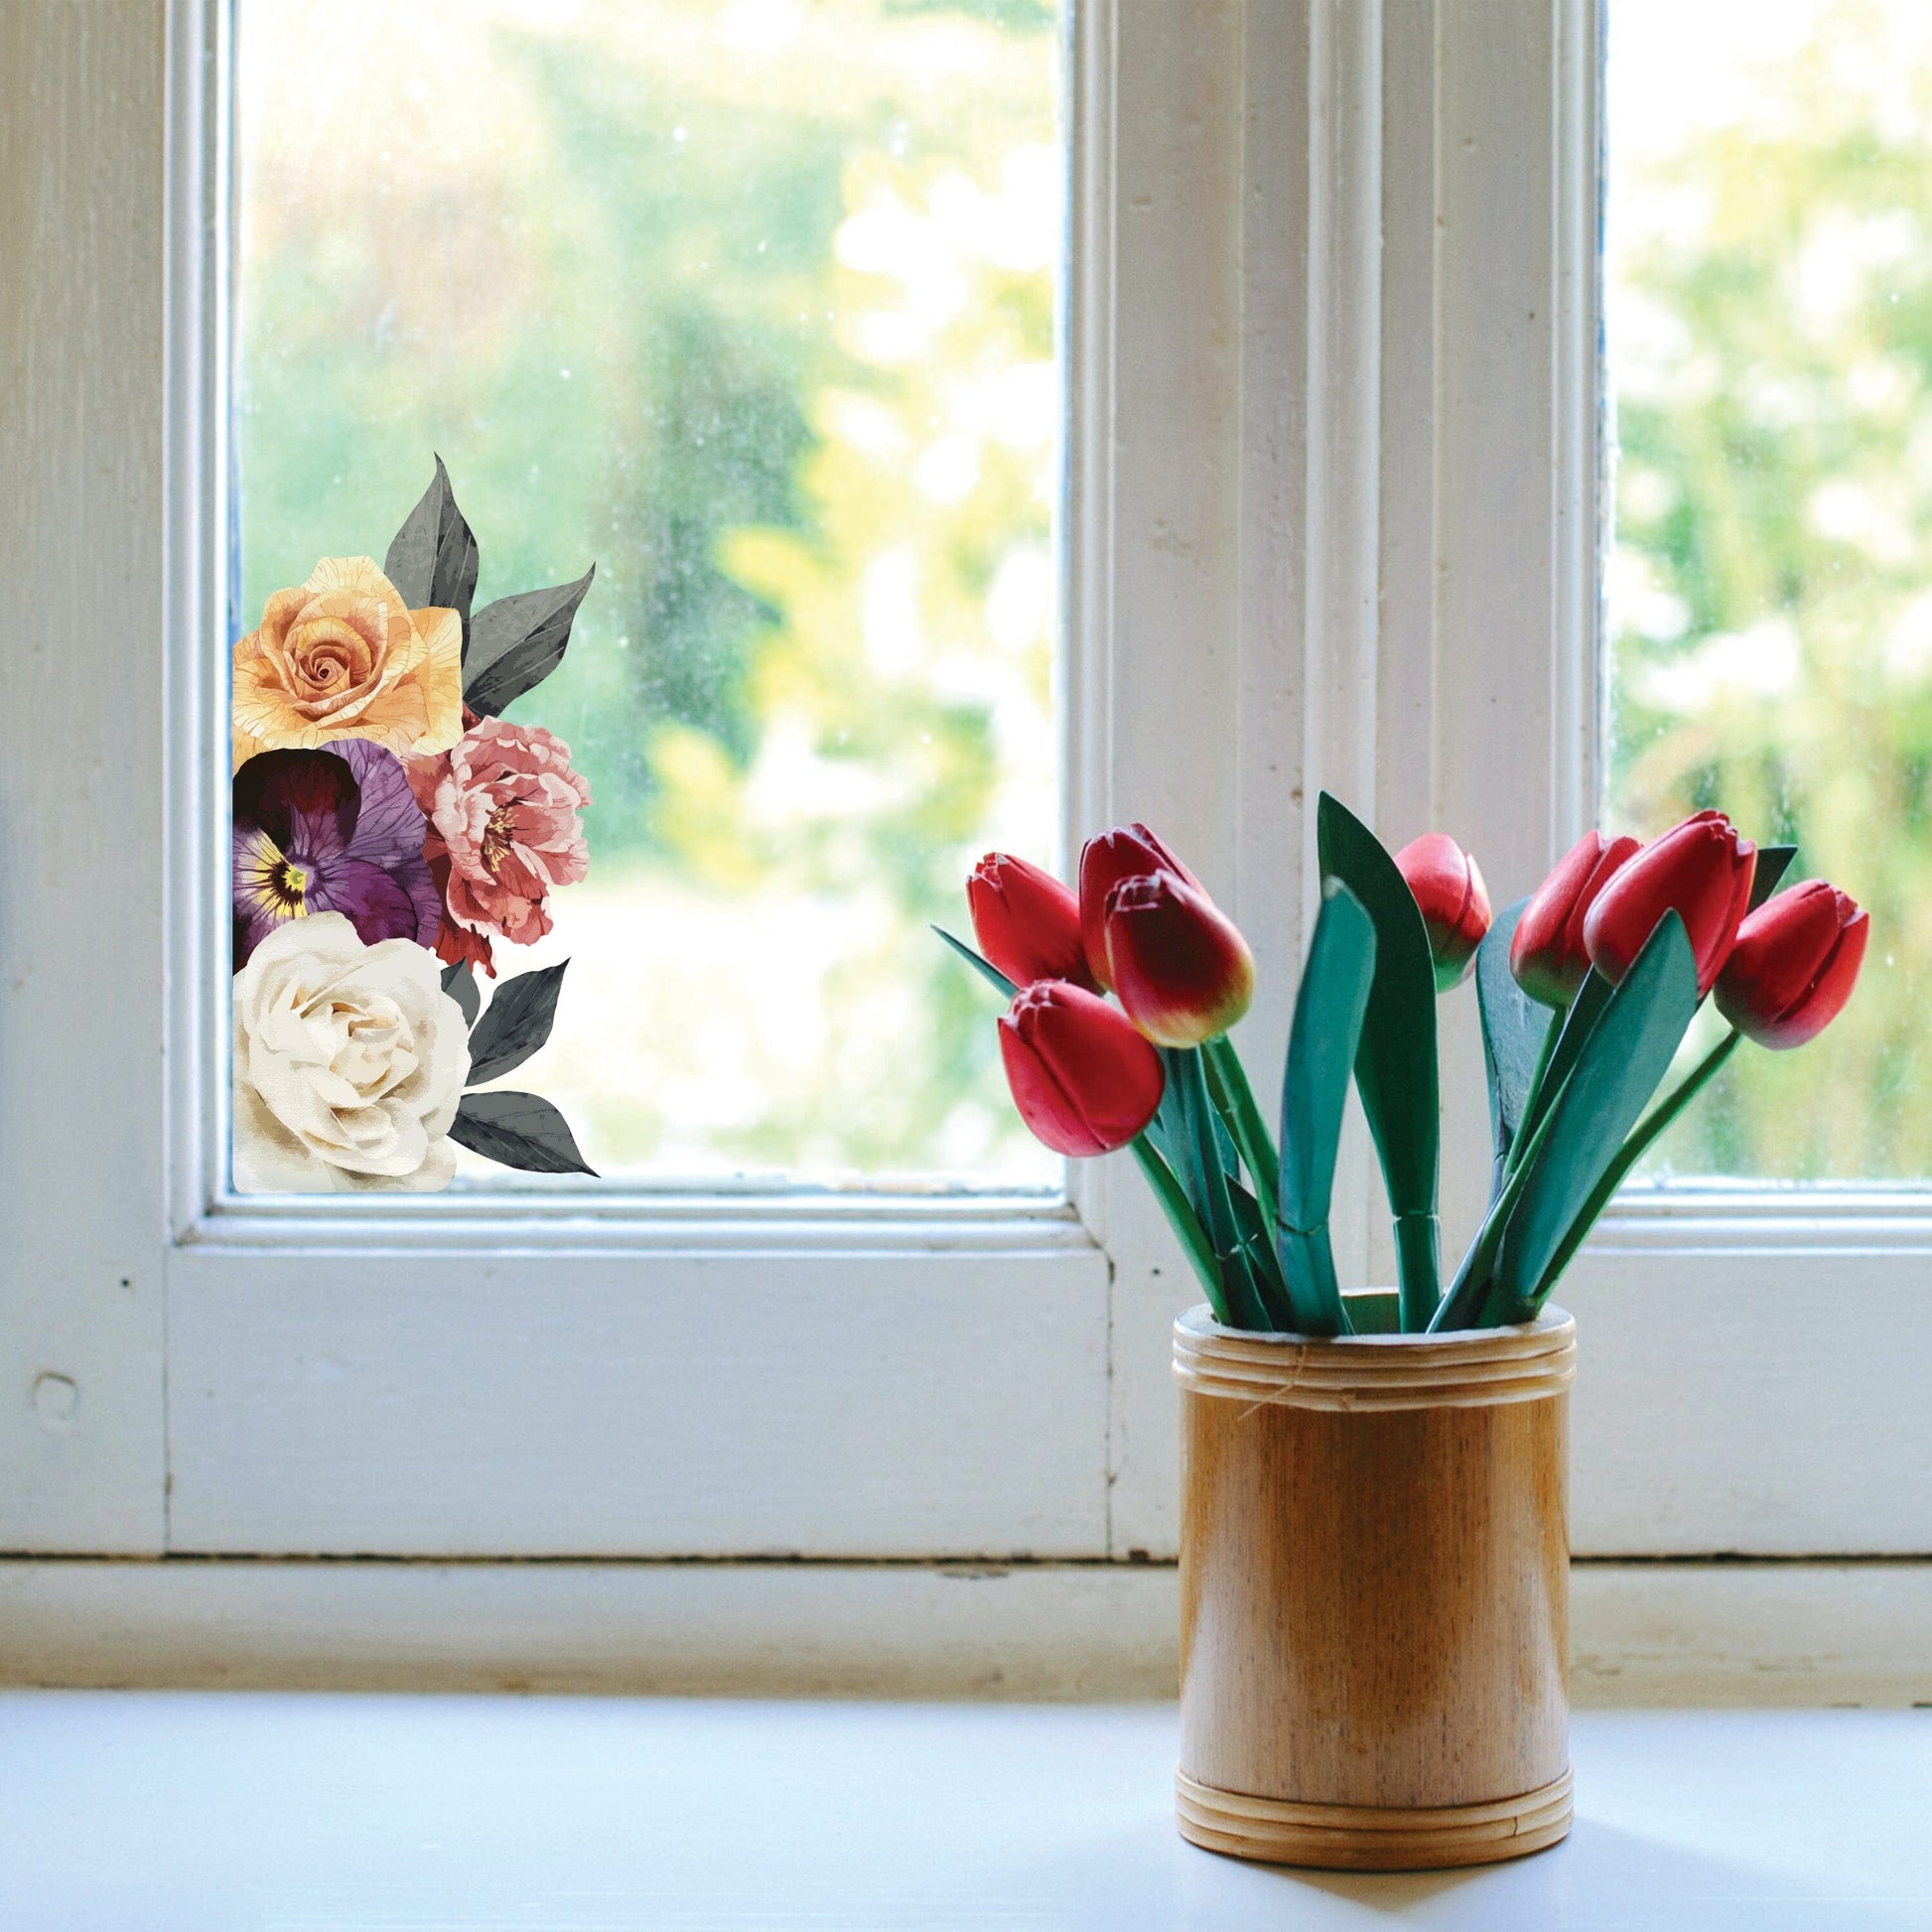 Vintage Floral Window Decals Decals Urbanwalls Standard Adhesive Sample 